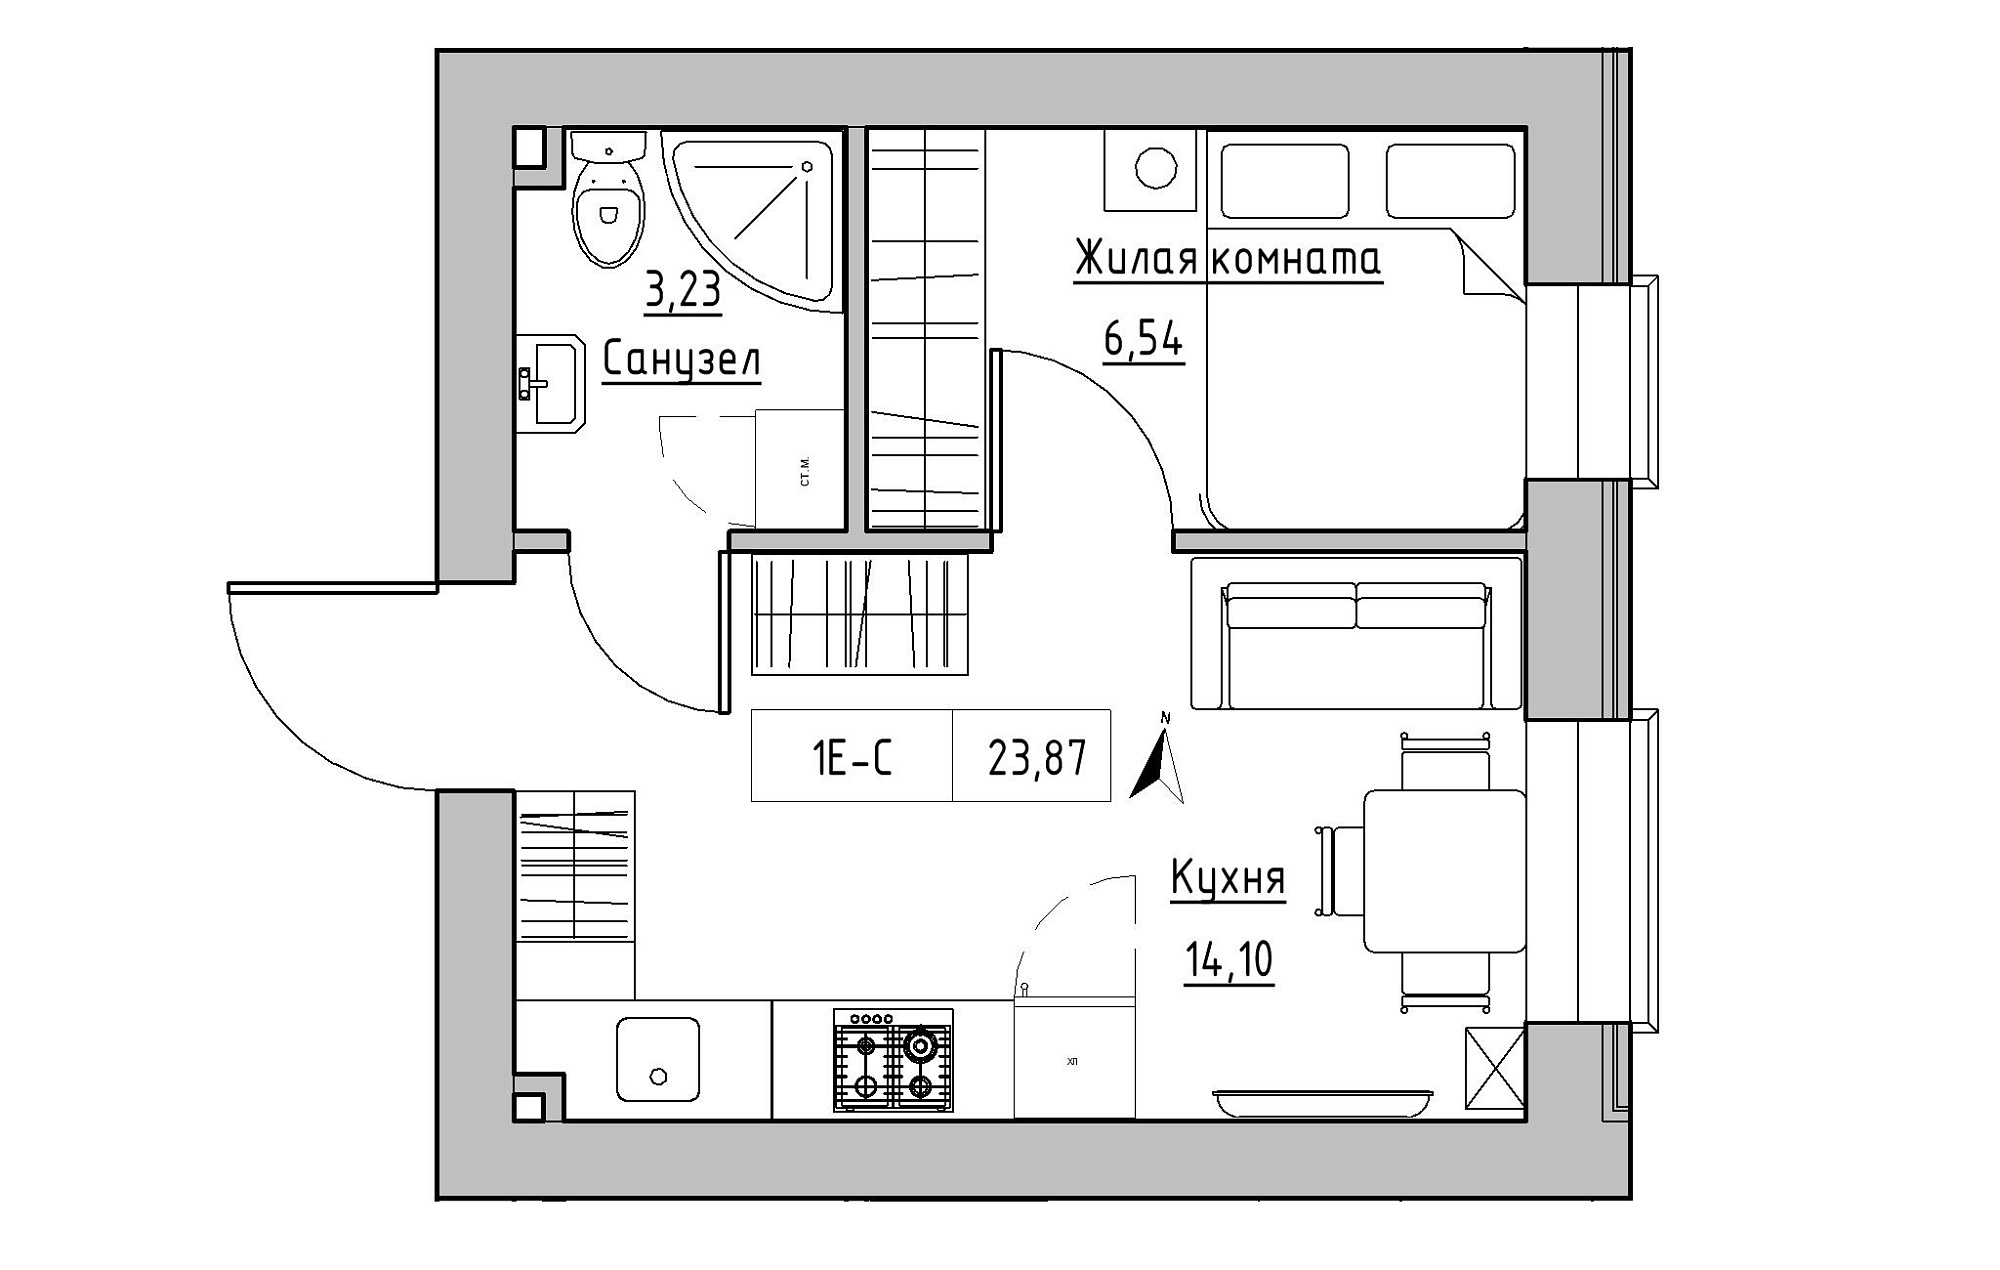 Планировка 1-к квартира площей 23.87м2, KS-019-02/0004.